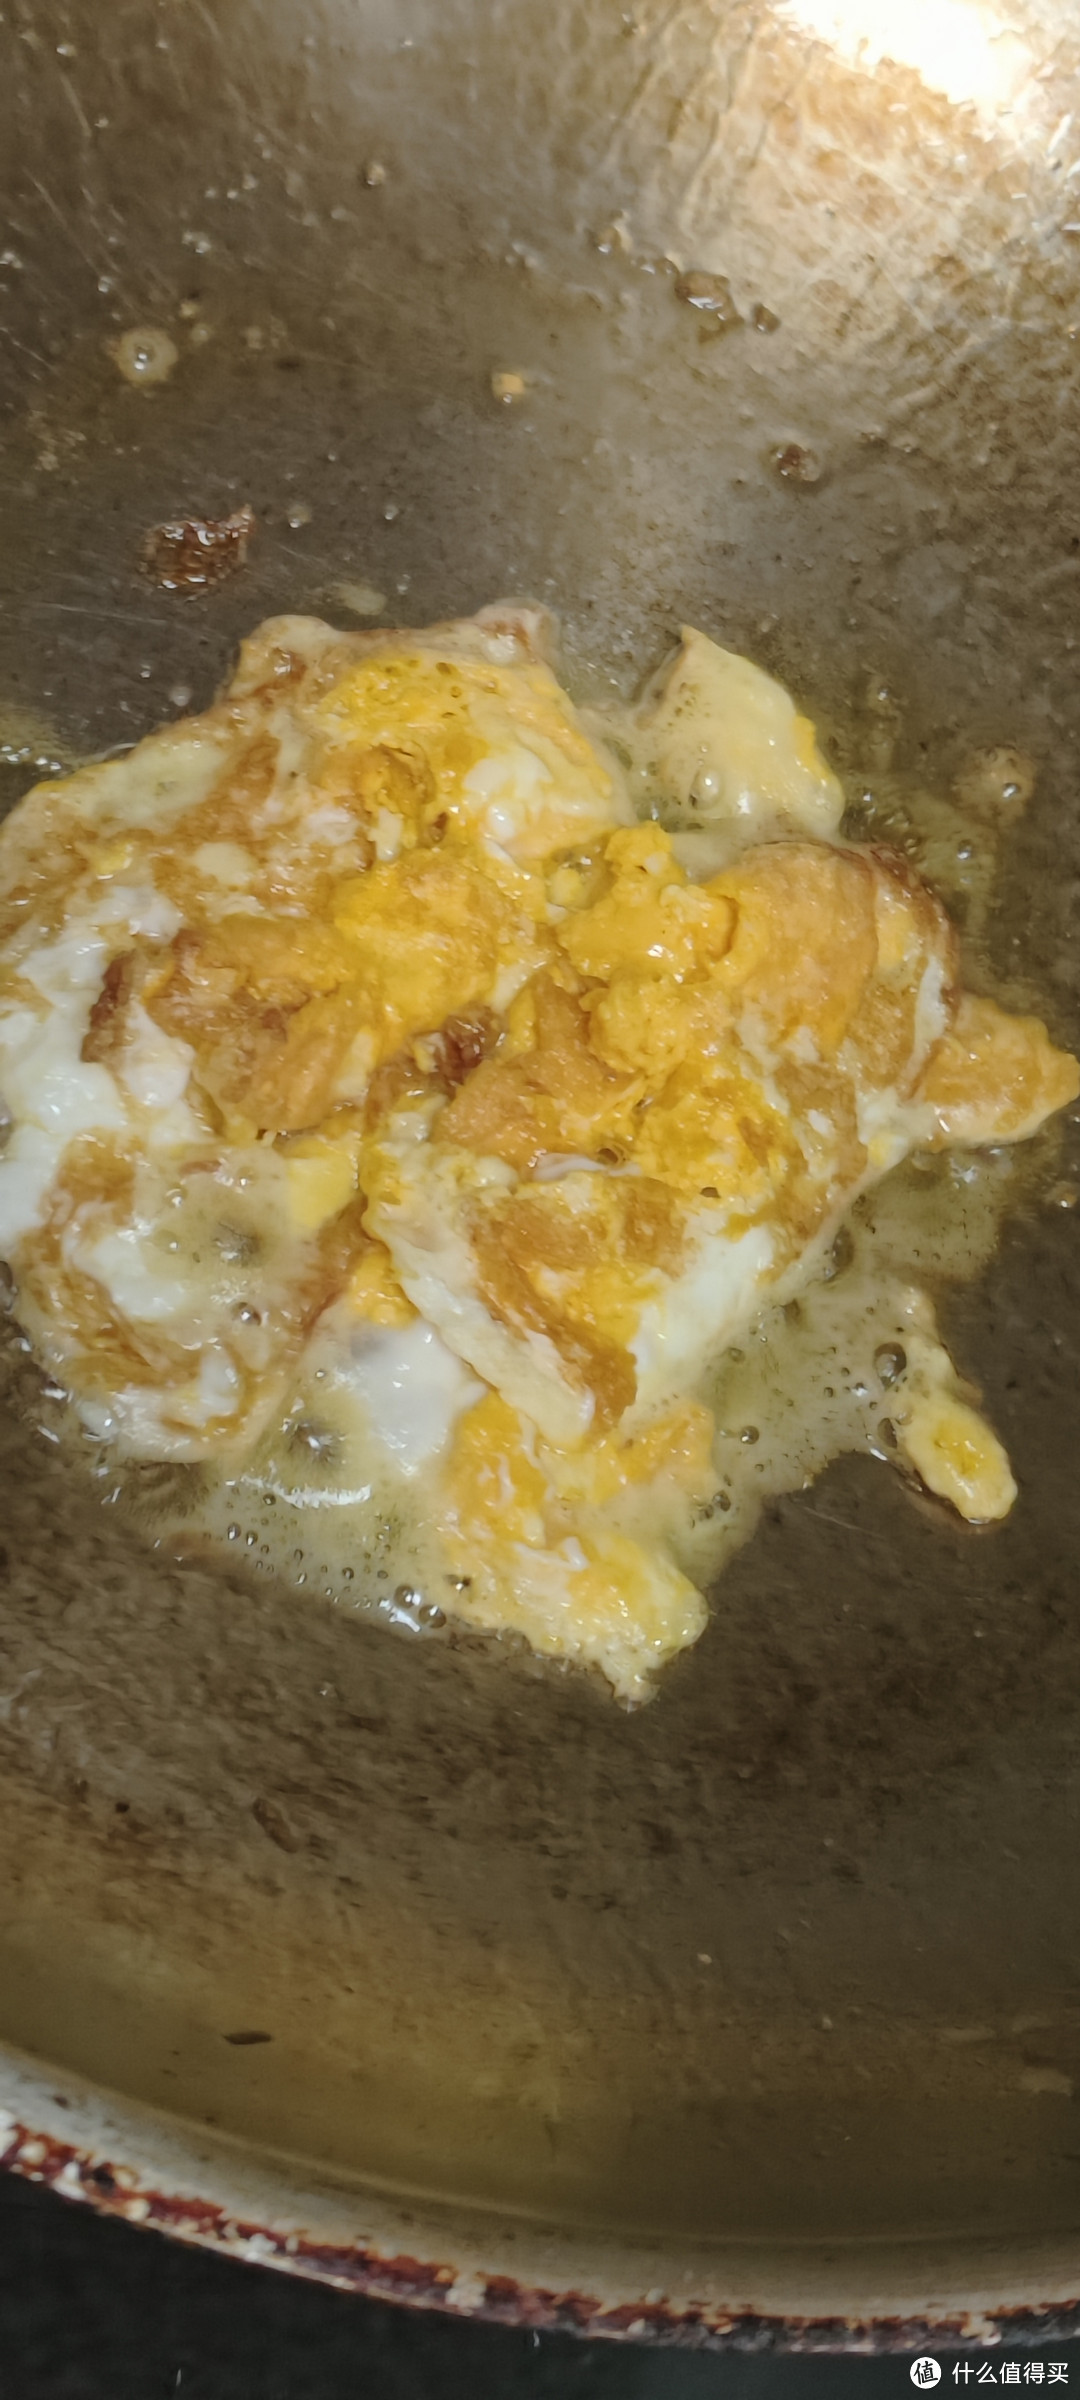 黄天鹅鸡蛋，颜色是真的黄/黄天鹅可生食鲜鸡蛋健康轻食无菌蛋/其实就是可生食鸡蛋